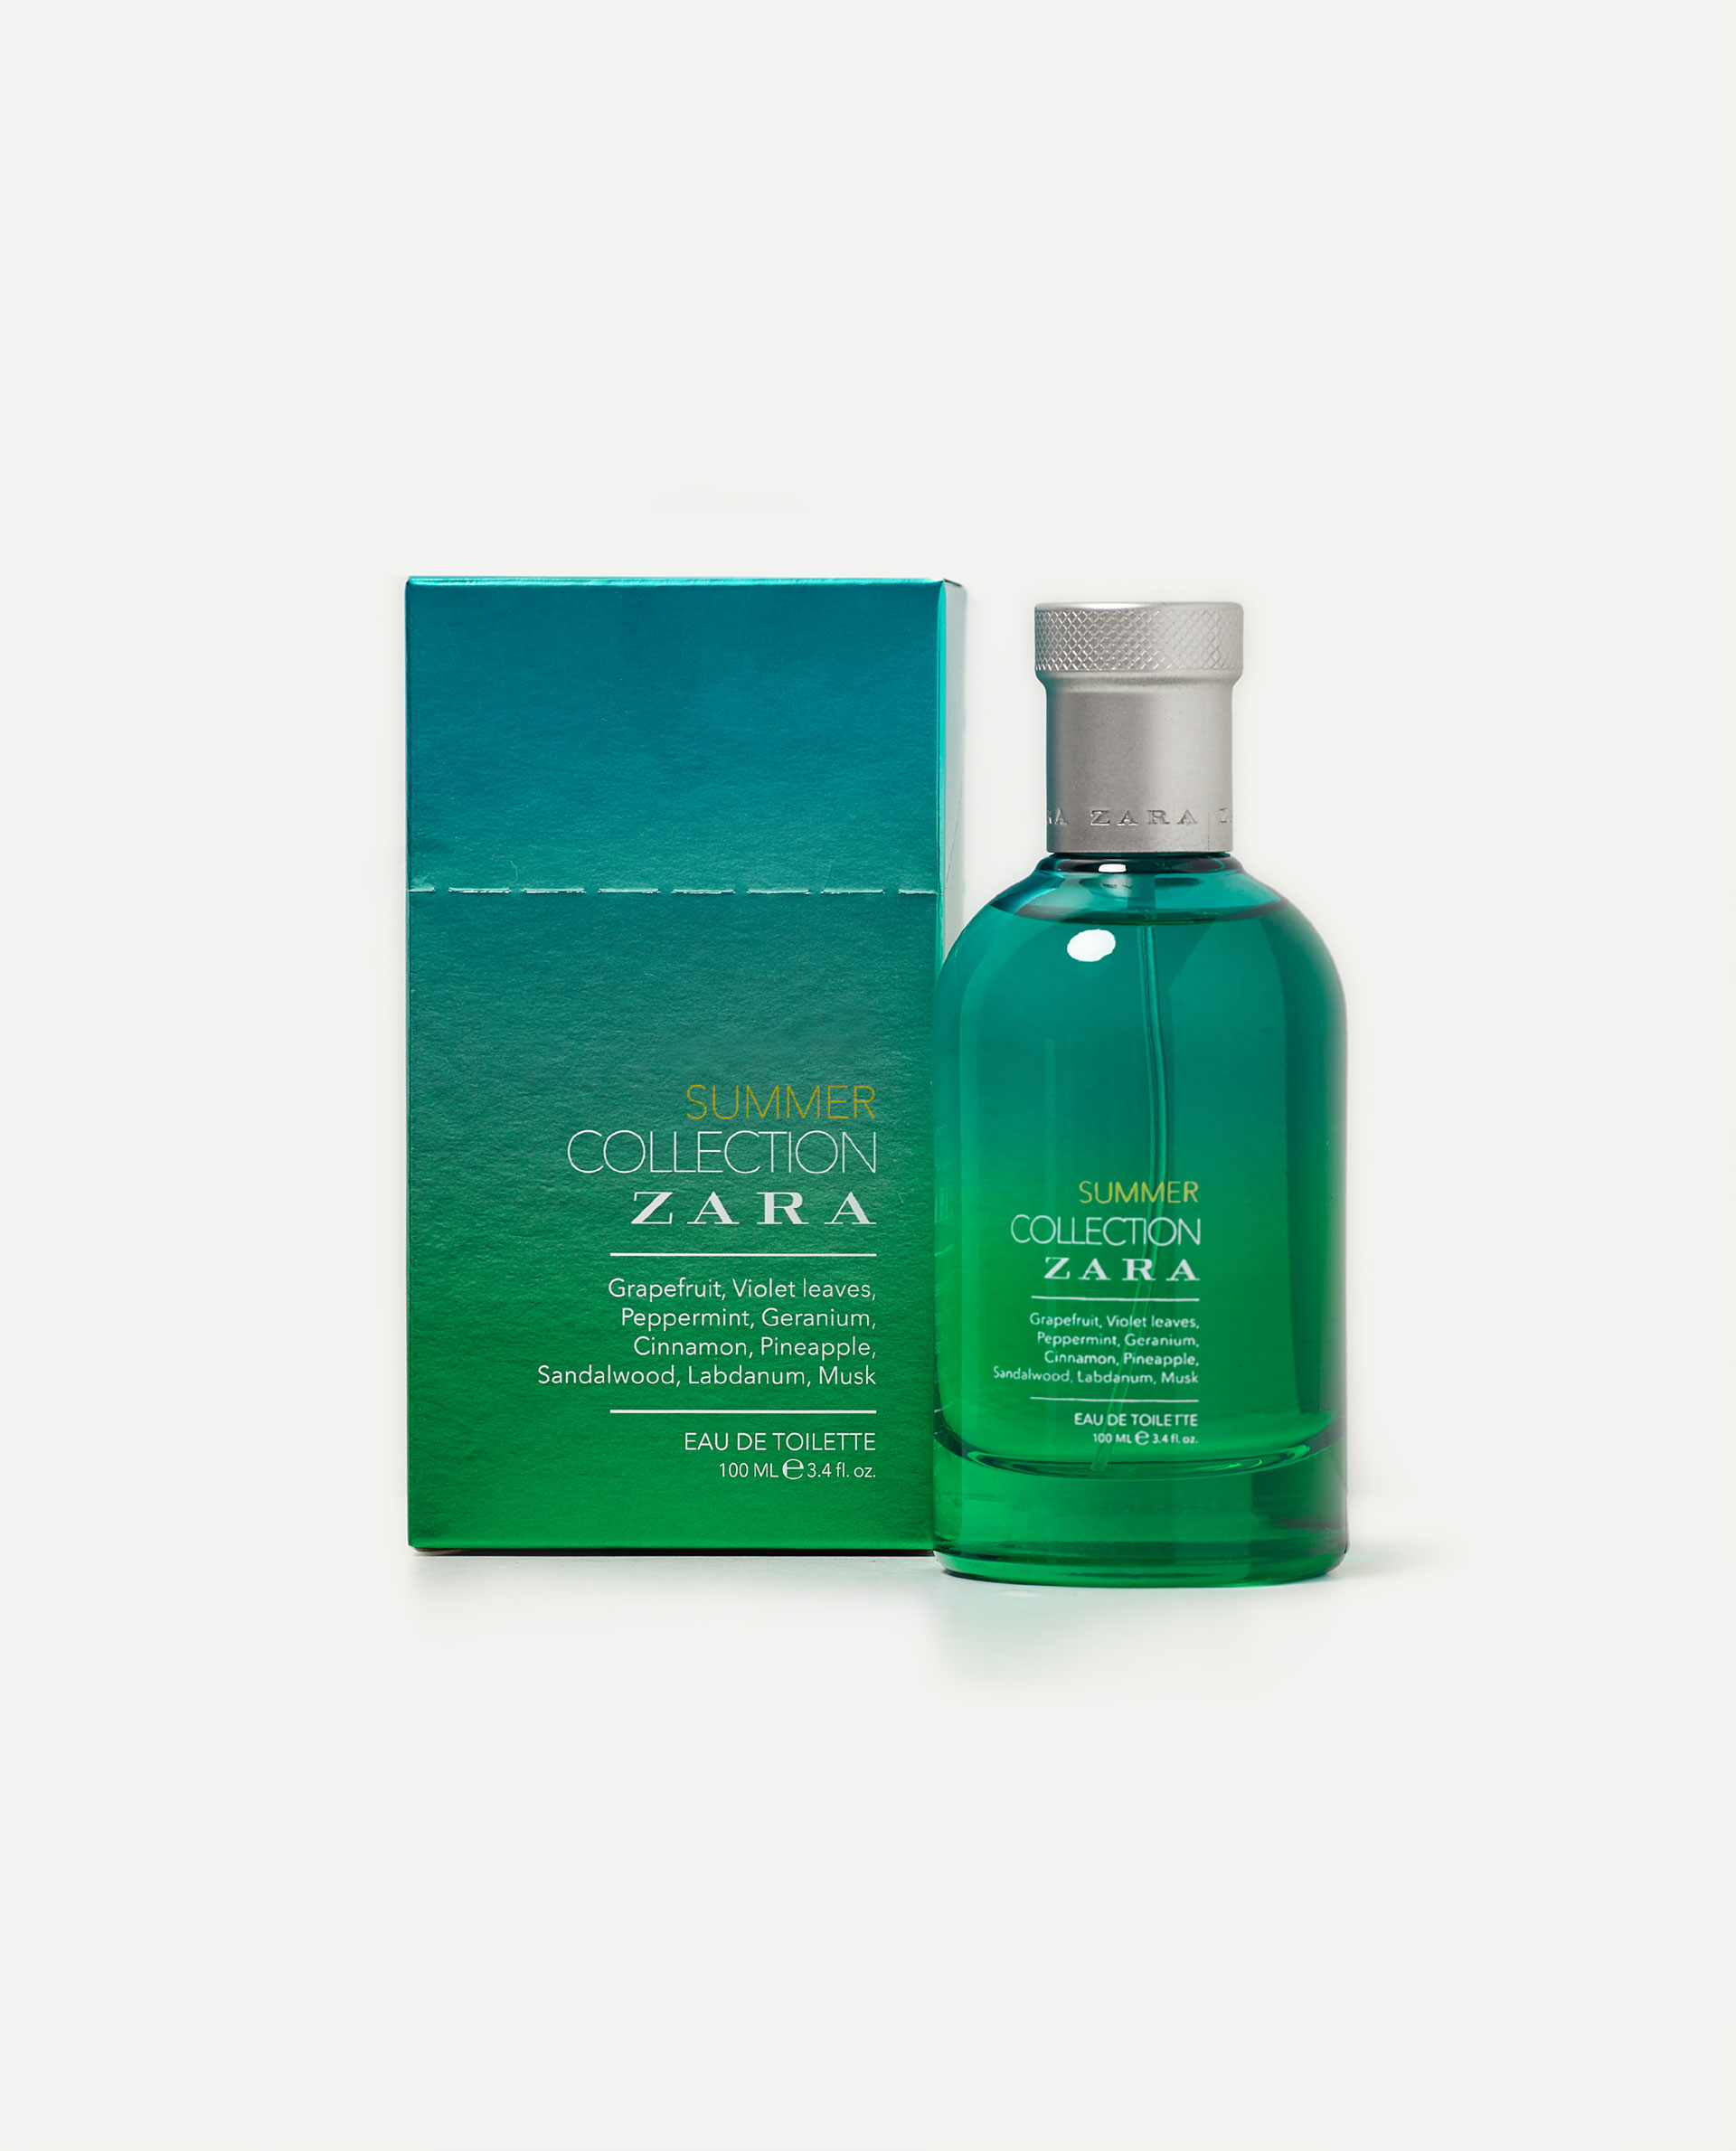 Summer Collection Zara Zara cologne - a new fragrance for men 2017